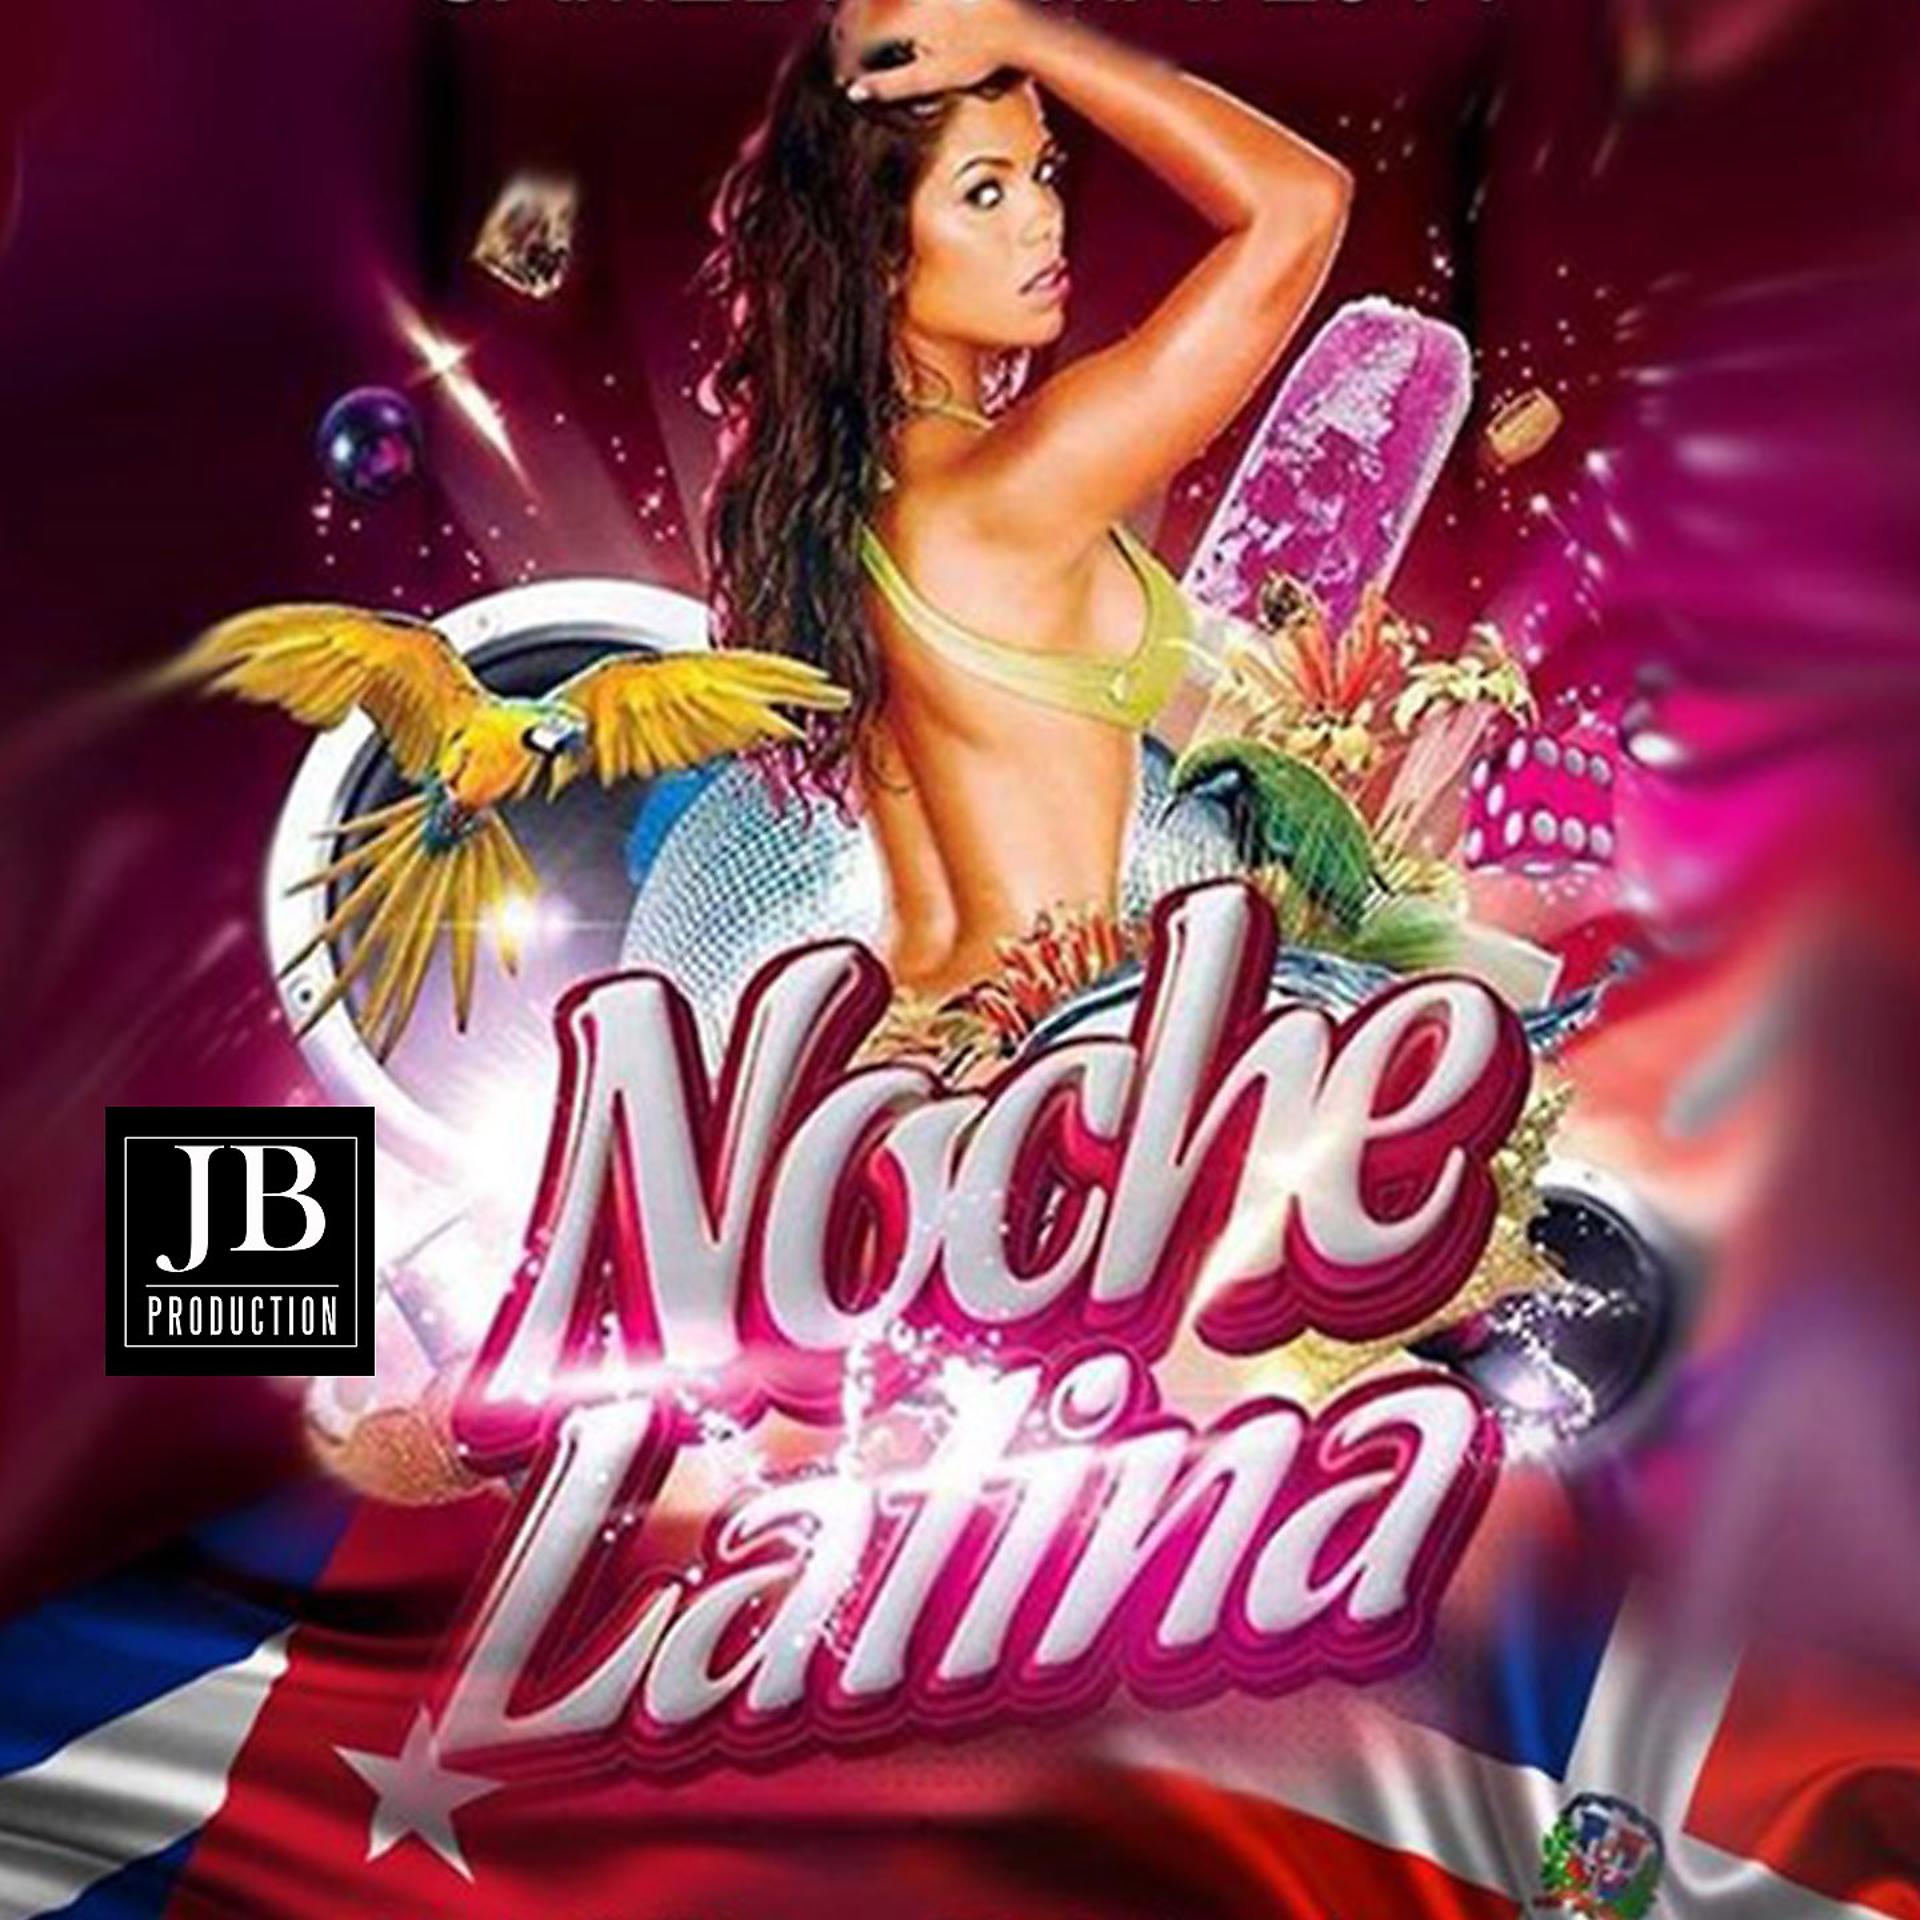 Постер альбома Noche Latina